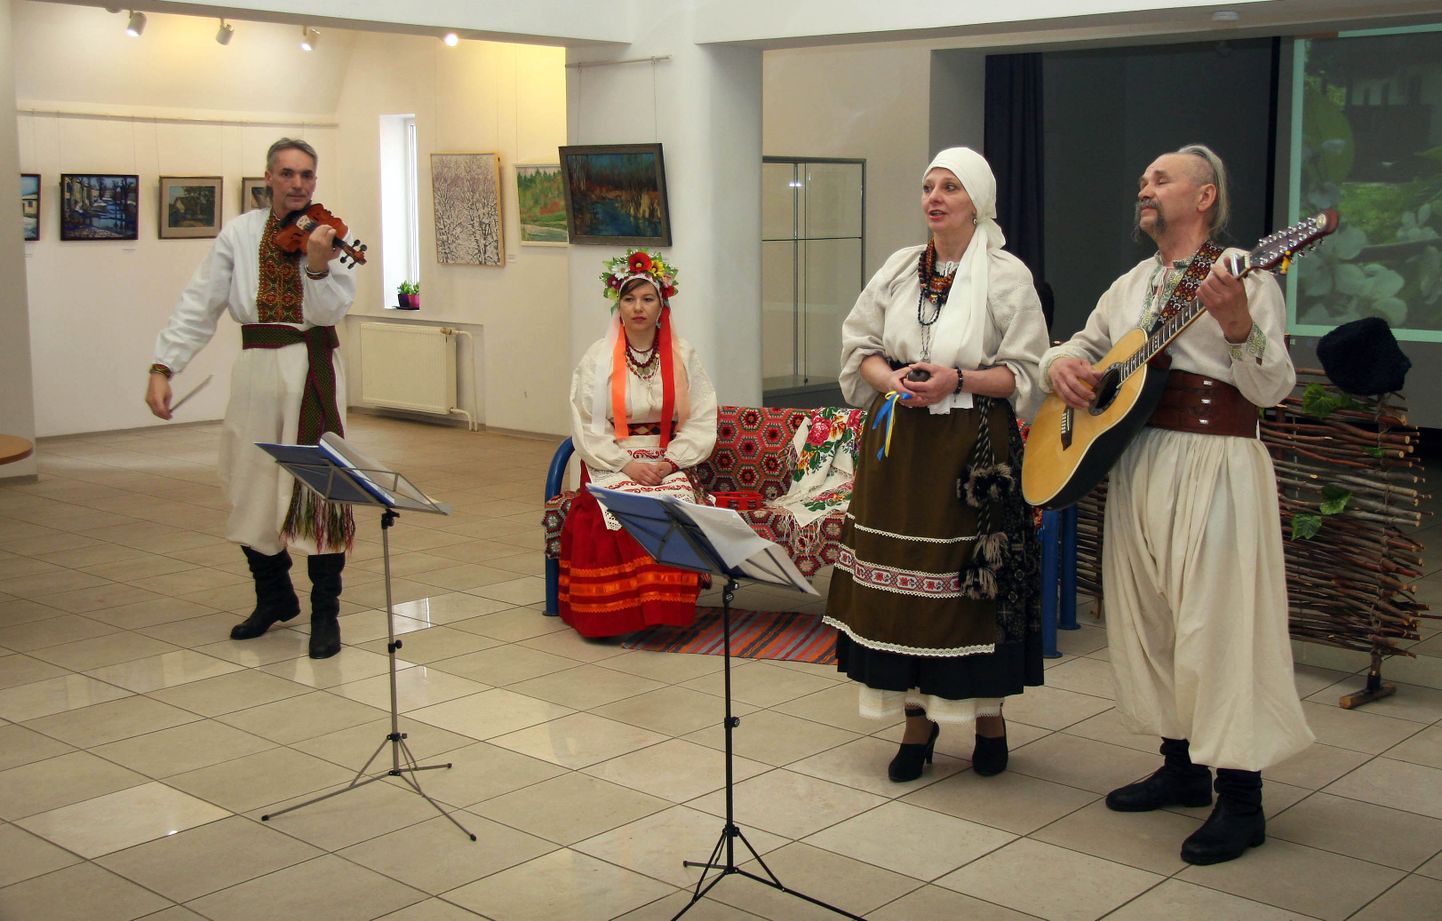 Грустные и веселые украинские песни звучали в субботу в окружении картин.